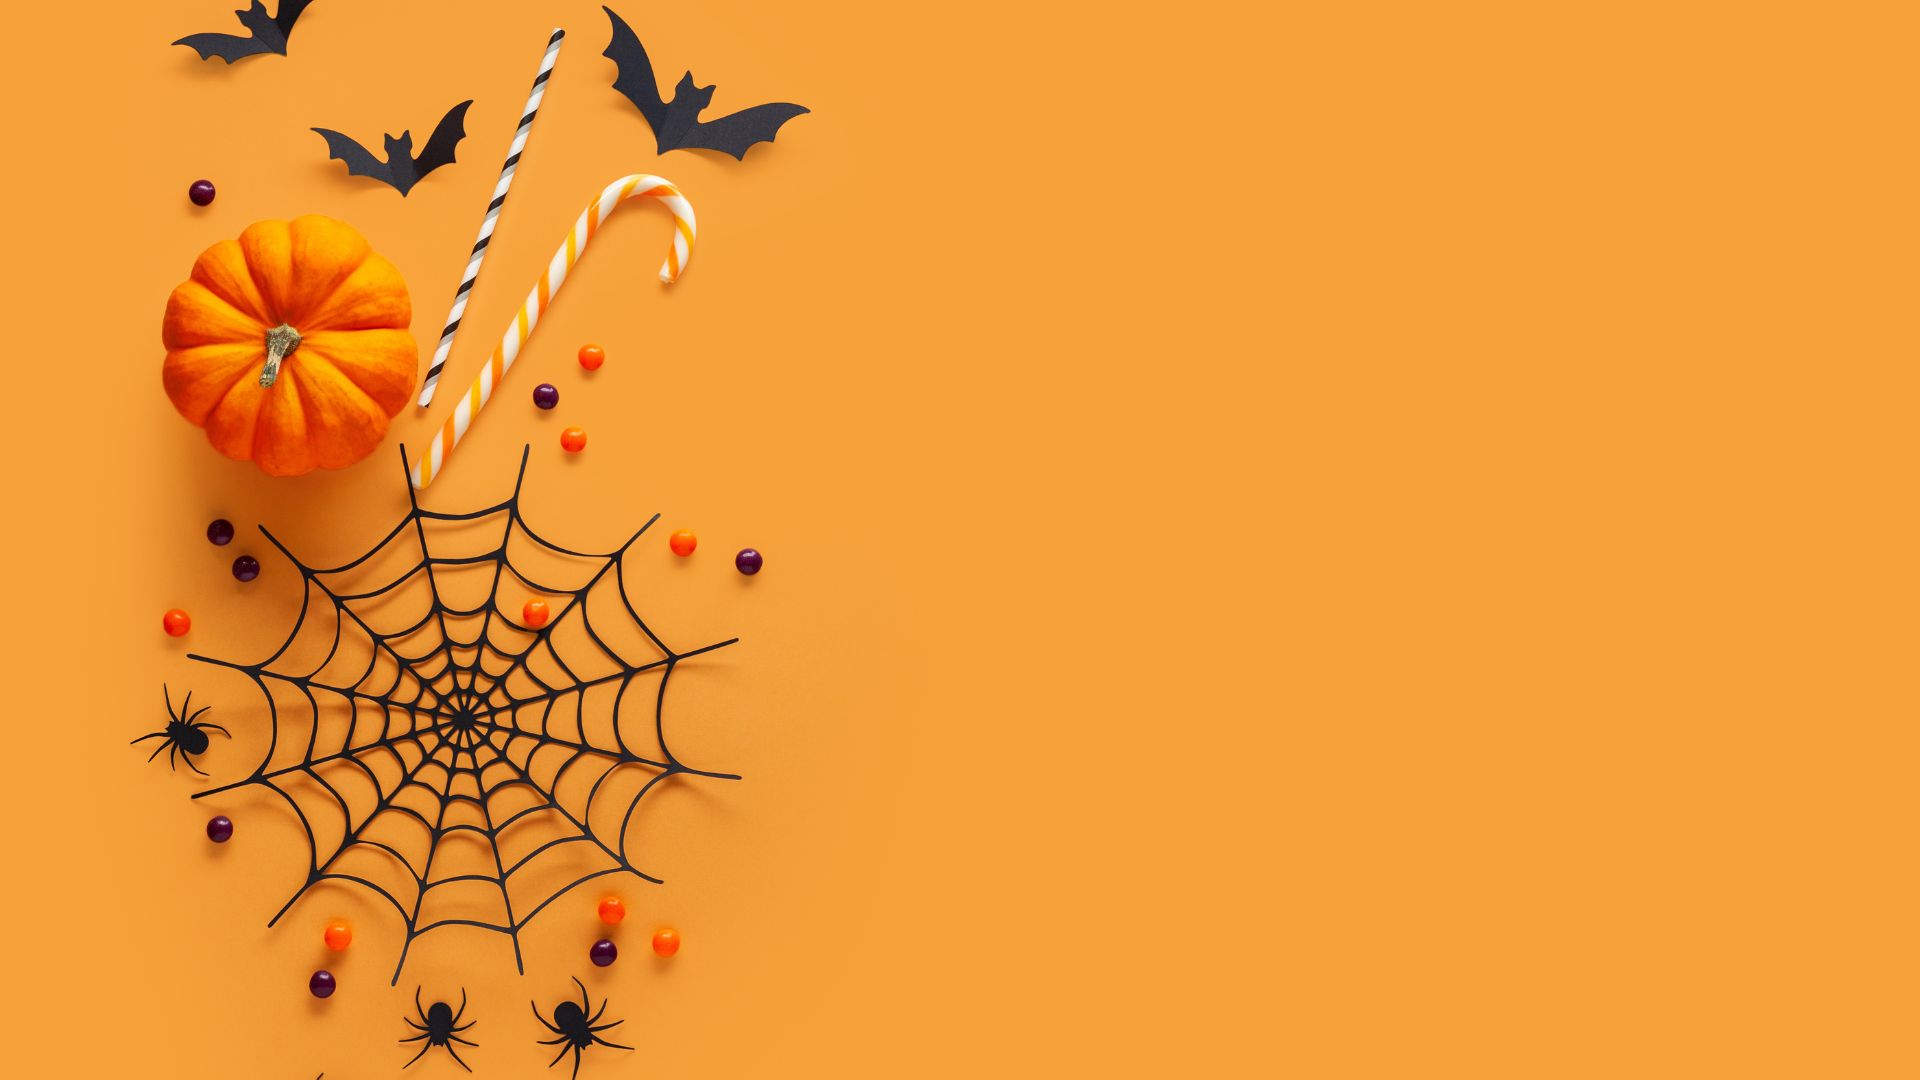 Imagem de fundo alaranjado. Ao lado esquerdo da tela, ícones que simbolizam o halloween como: abóbora, morcegos, aranhas e teias de aranhas.